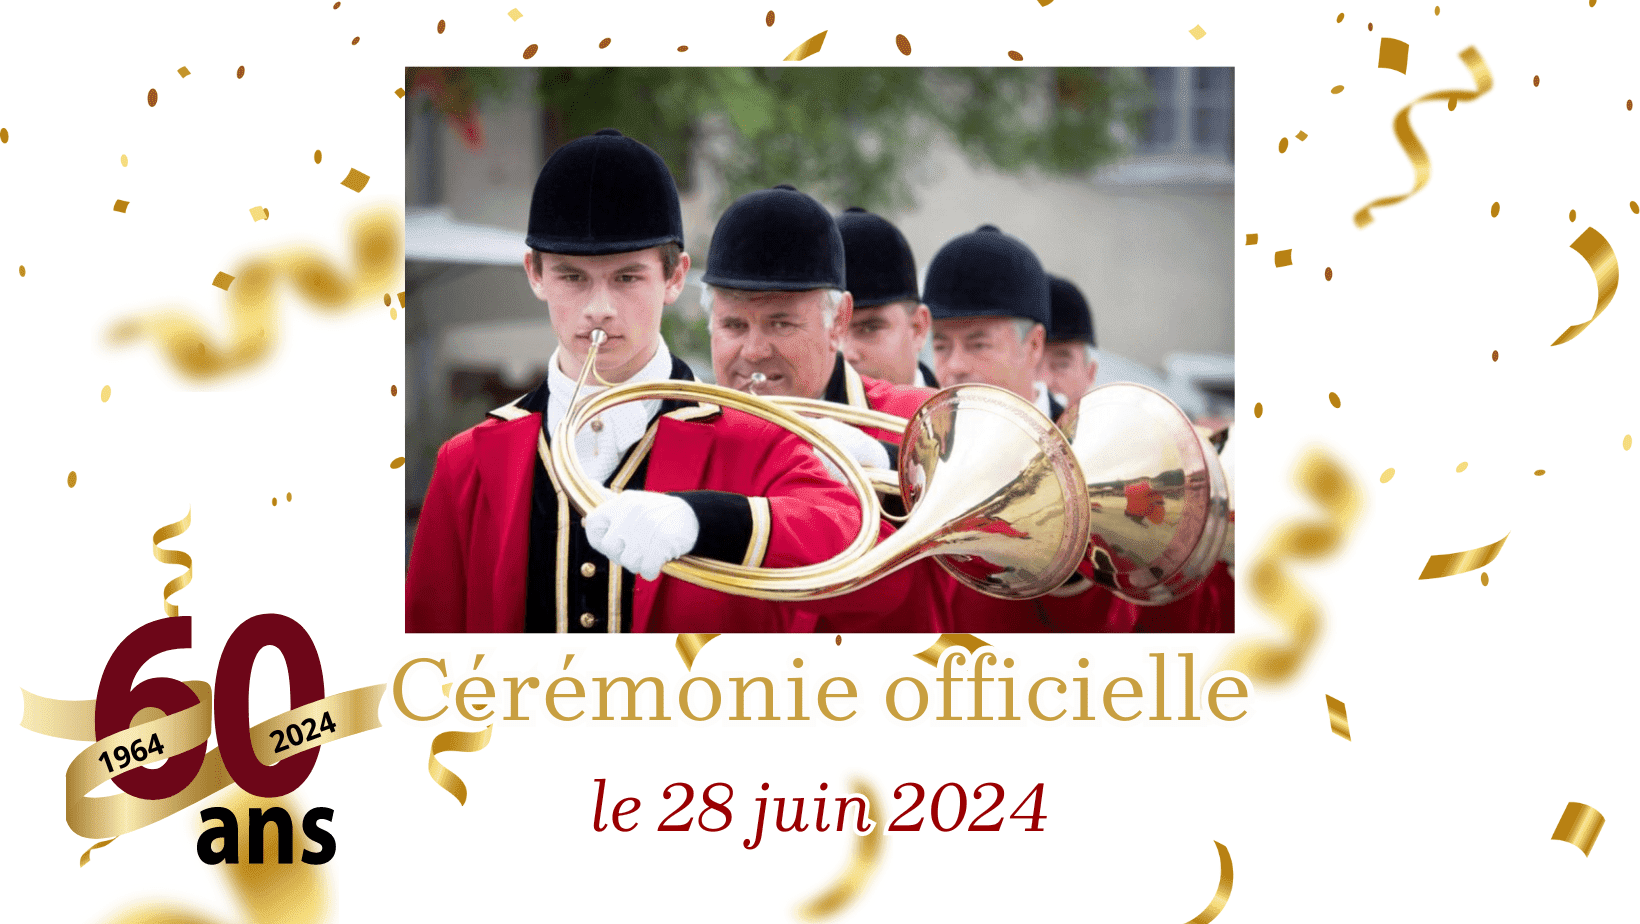 Camping La Garangeoire - Annonce spéciale : cérémonie officielle des 60 ans le 28 juin 2024 !